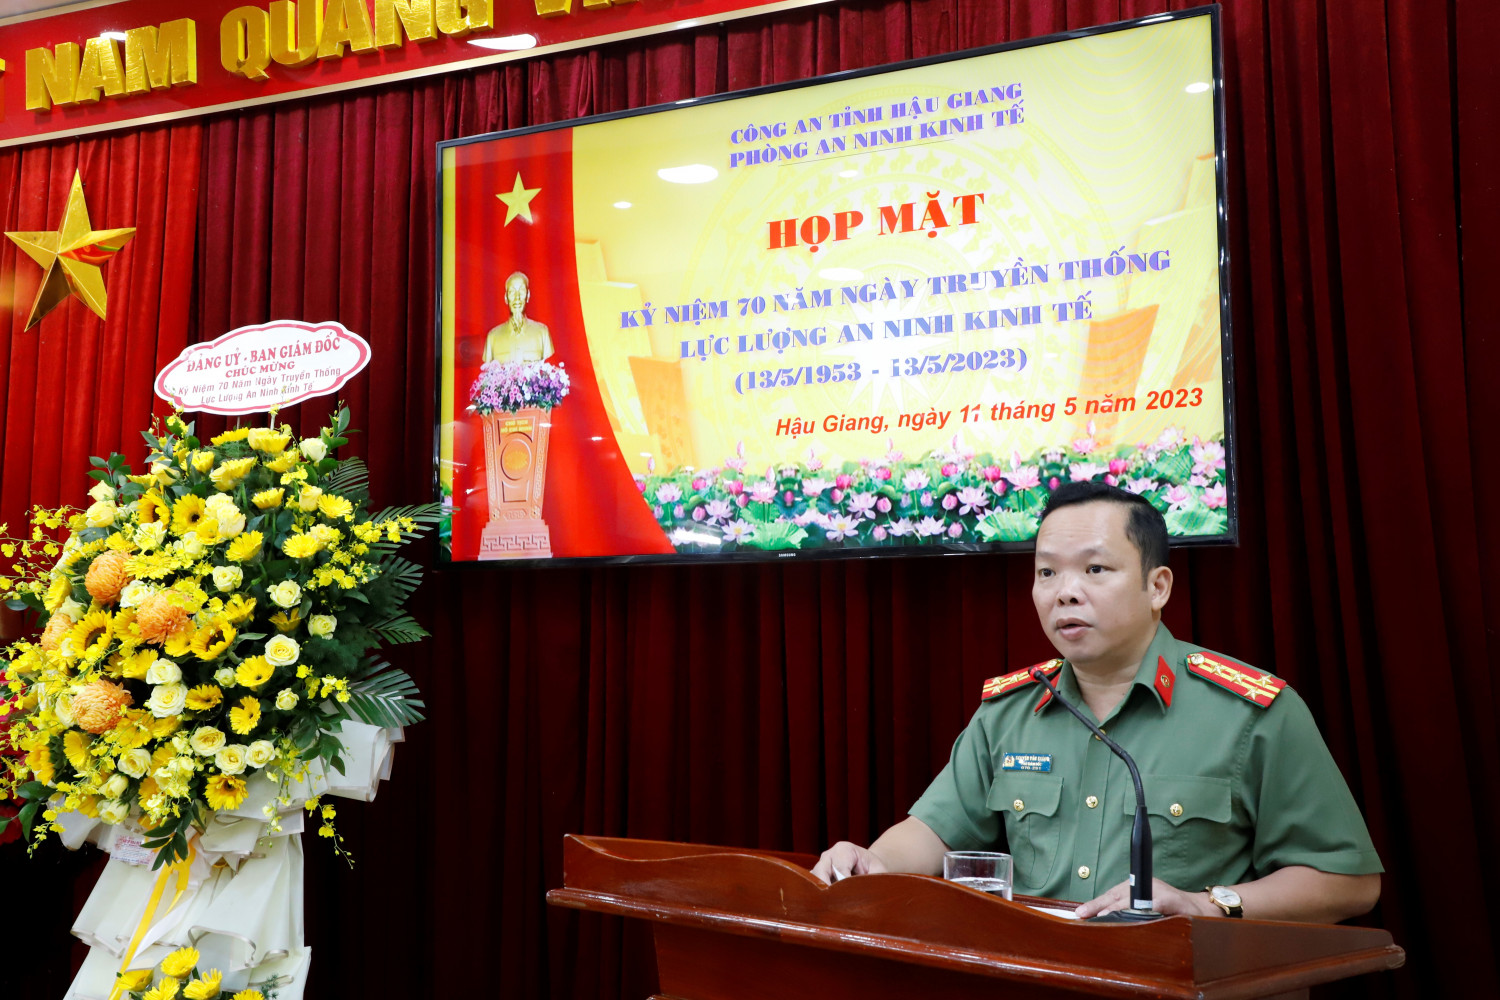 Đồng chí Đại tá Nguyễn Văn Thắng, Phó Giám đốc Công an tỉnh phát biểu chỉ đạo tại buổi họp mặt